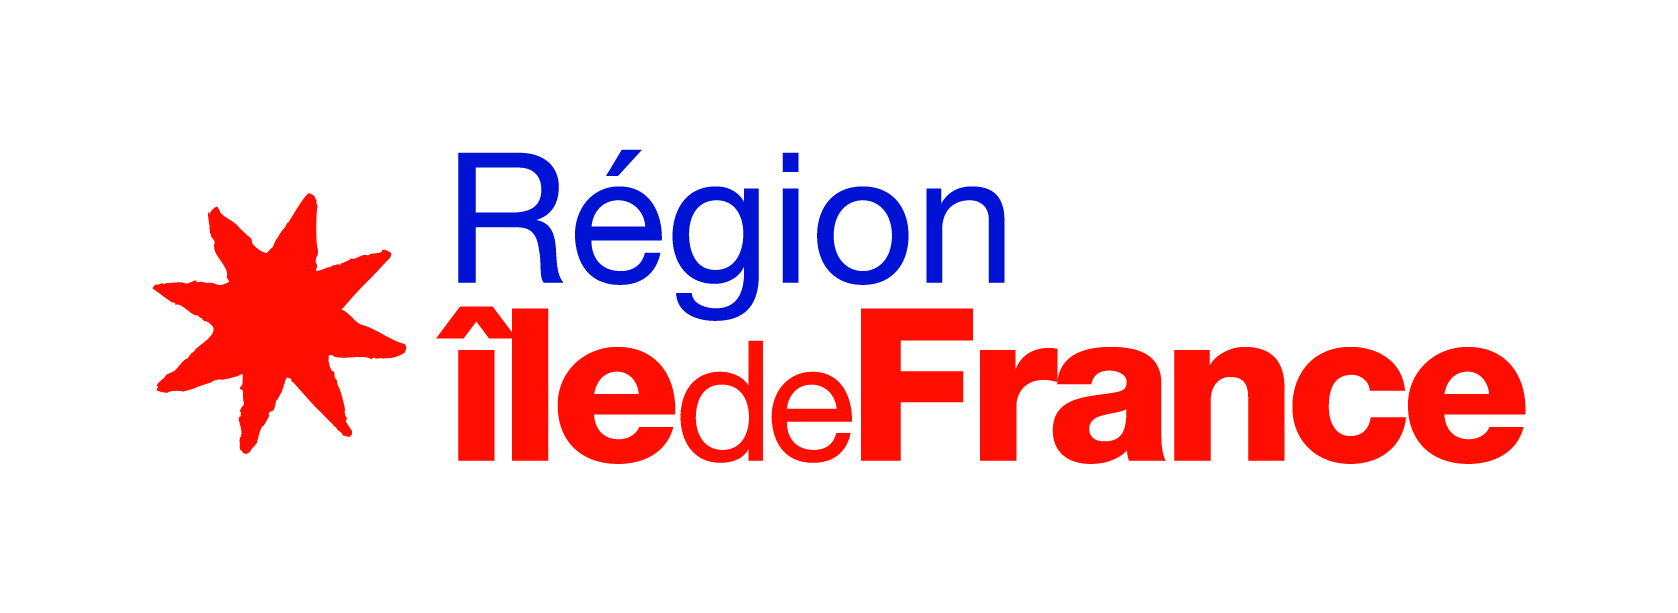 Région Ile de France - Partenaire CCPL